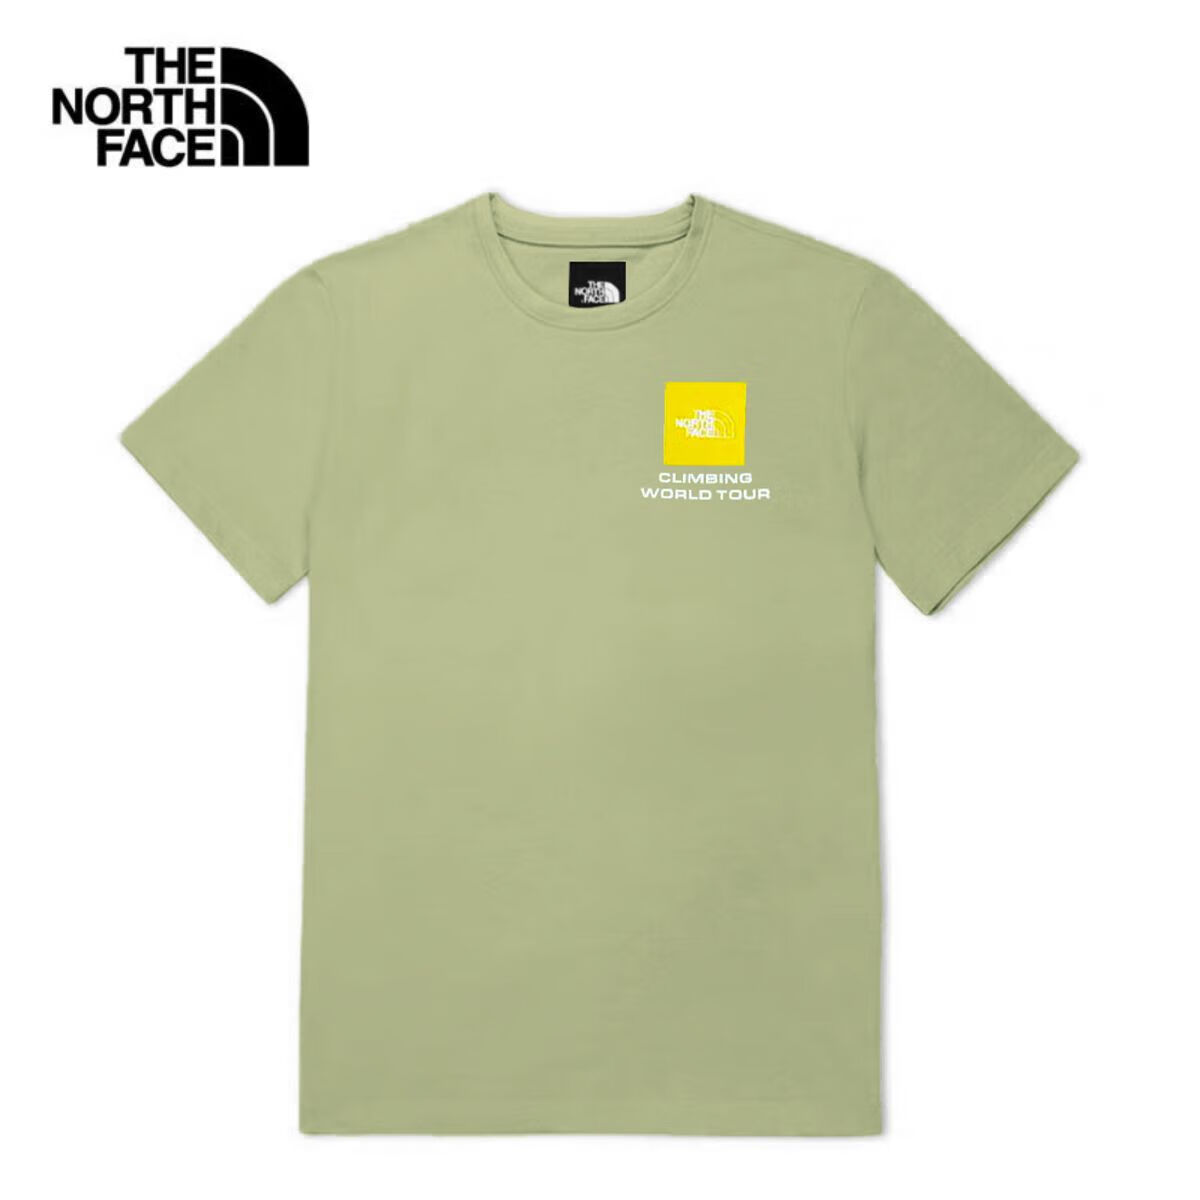 概率券、PLUS会员：The North Face 北面 户外印花短袖 5K1C 绿色/米白 132.61元包邮